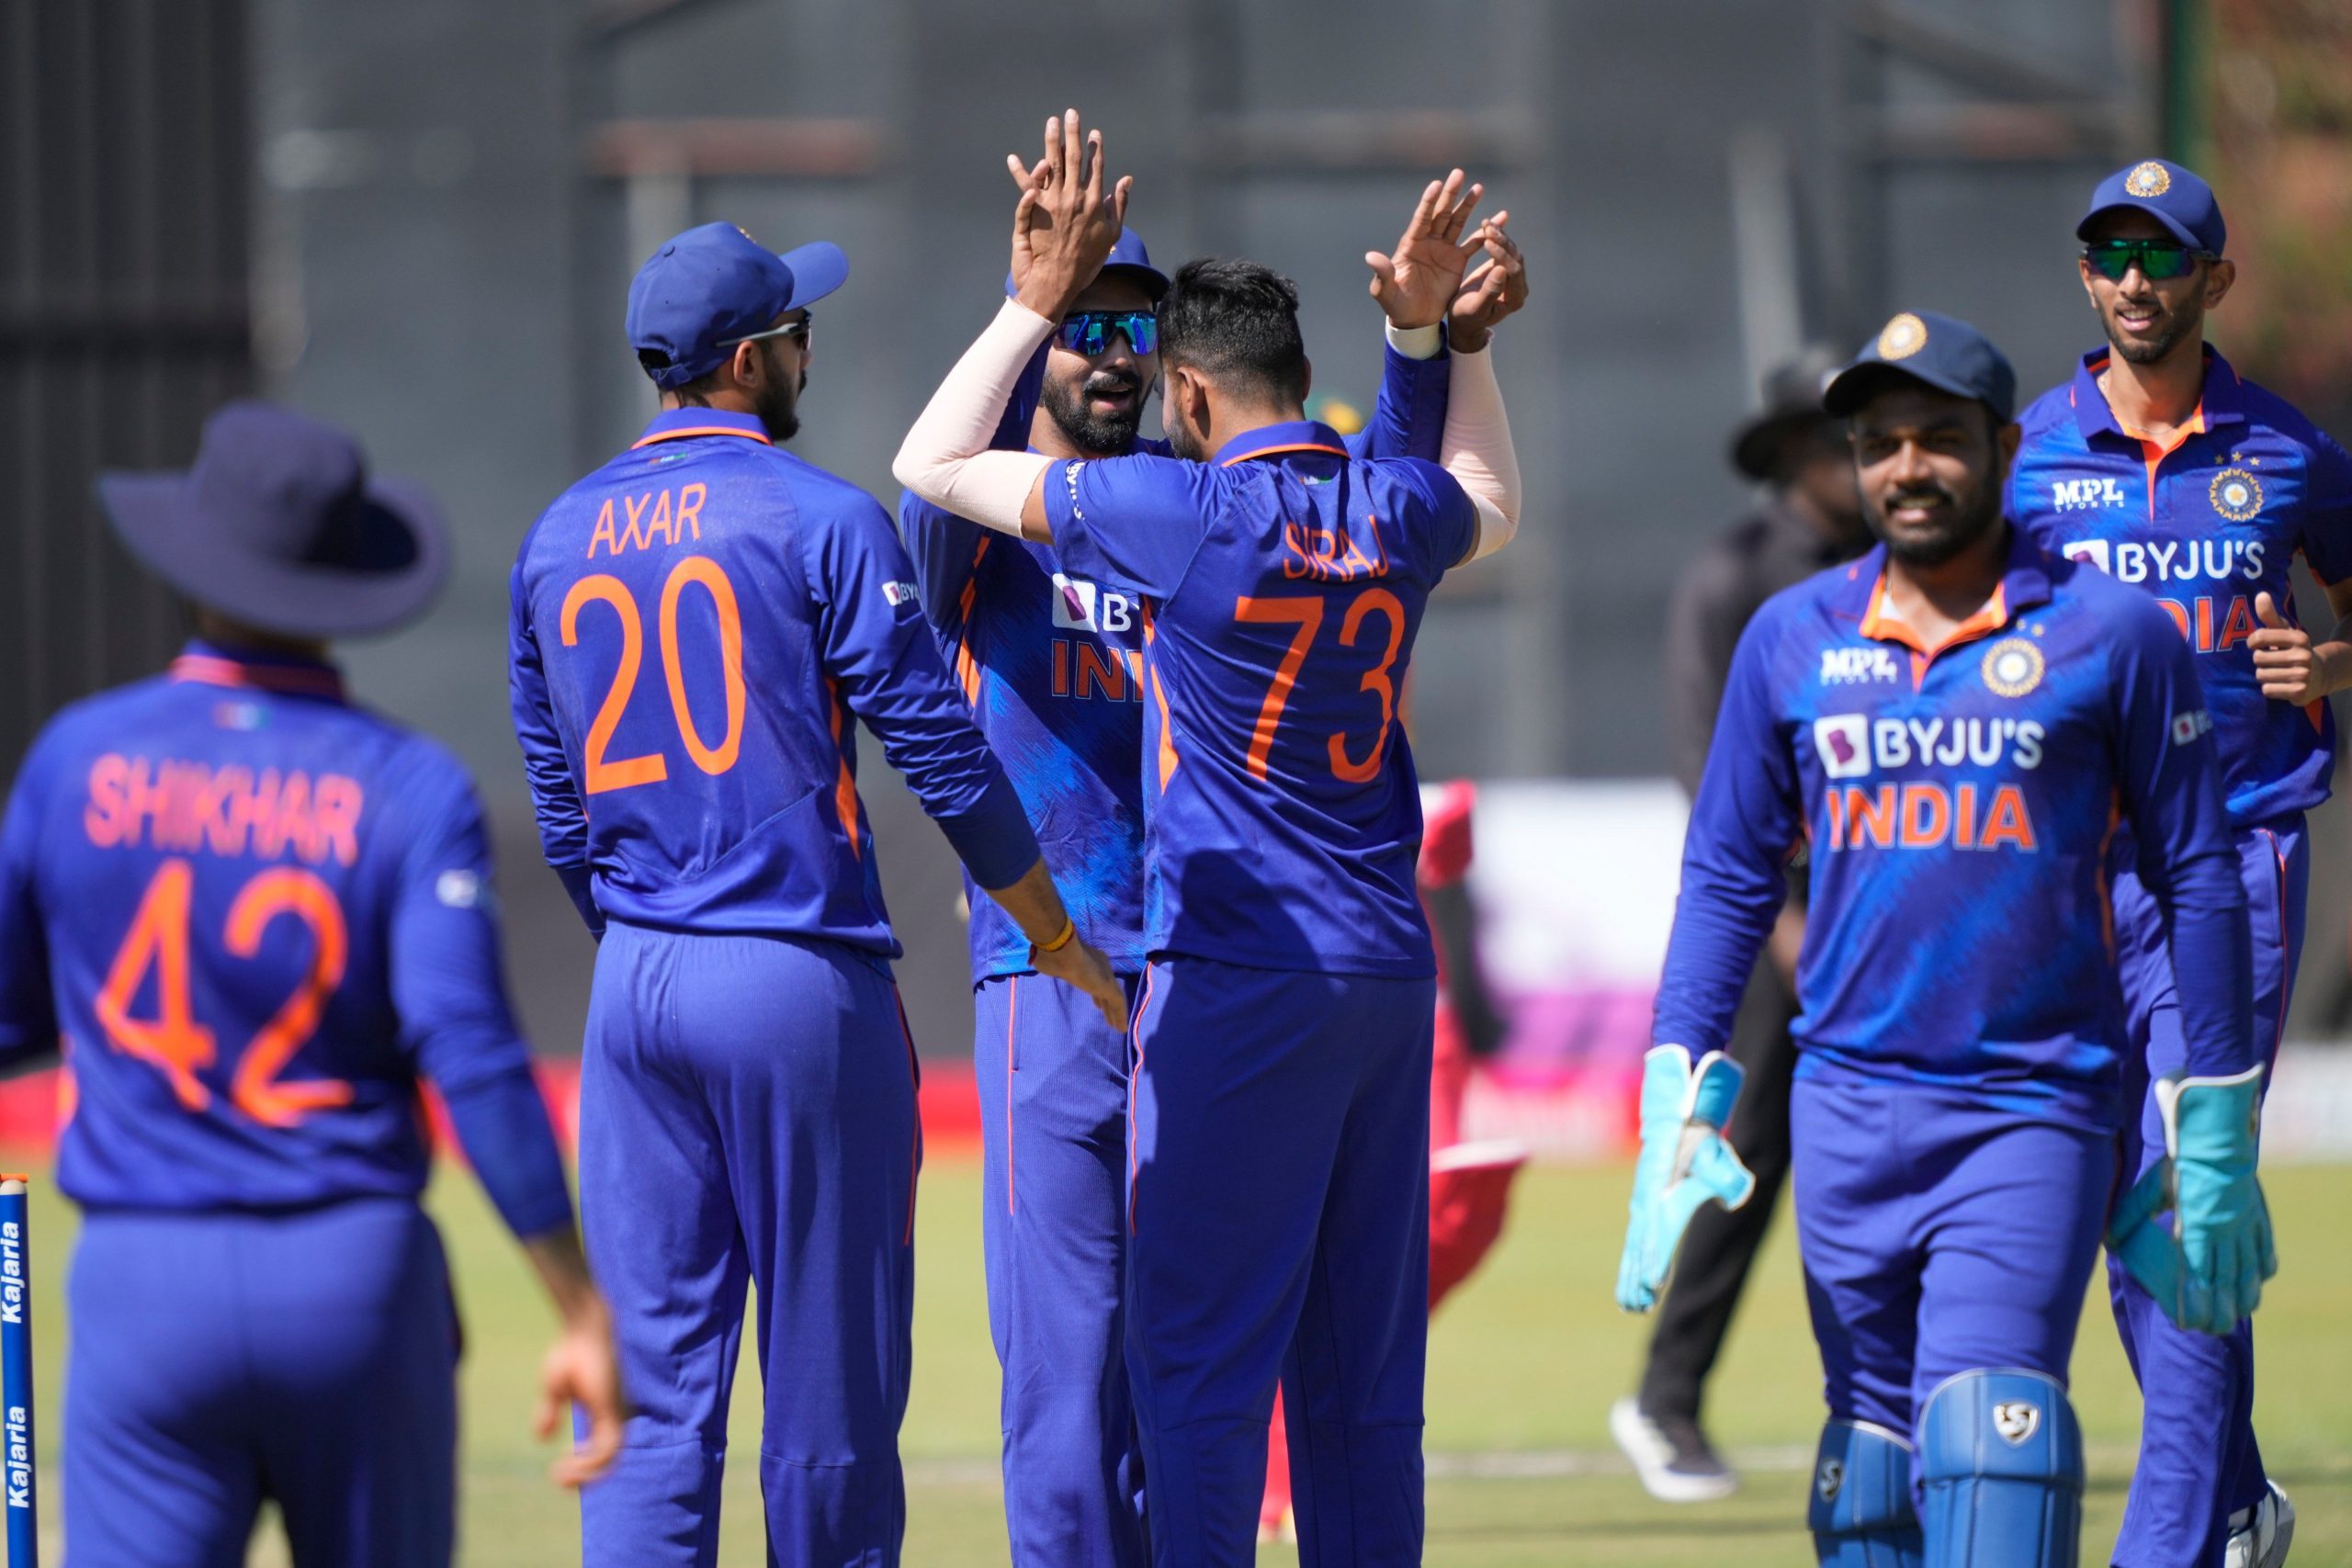 3rd ODI: India beat Zimbabwe by 13 runs